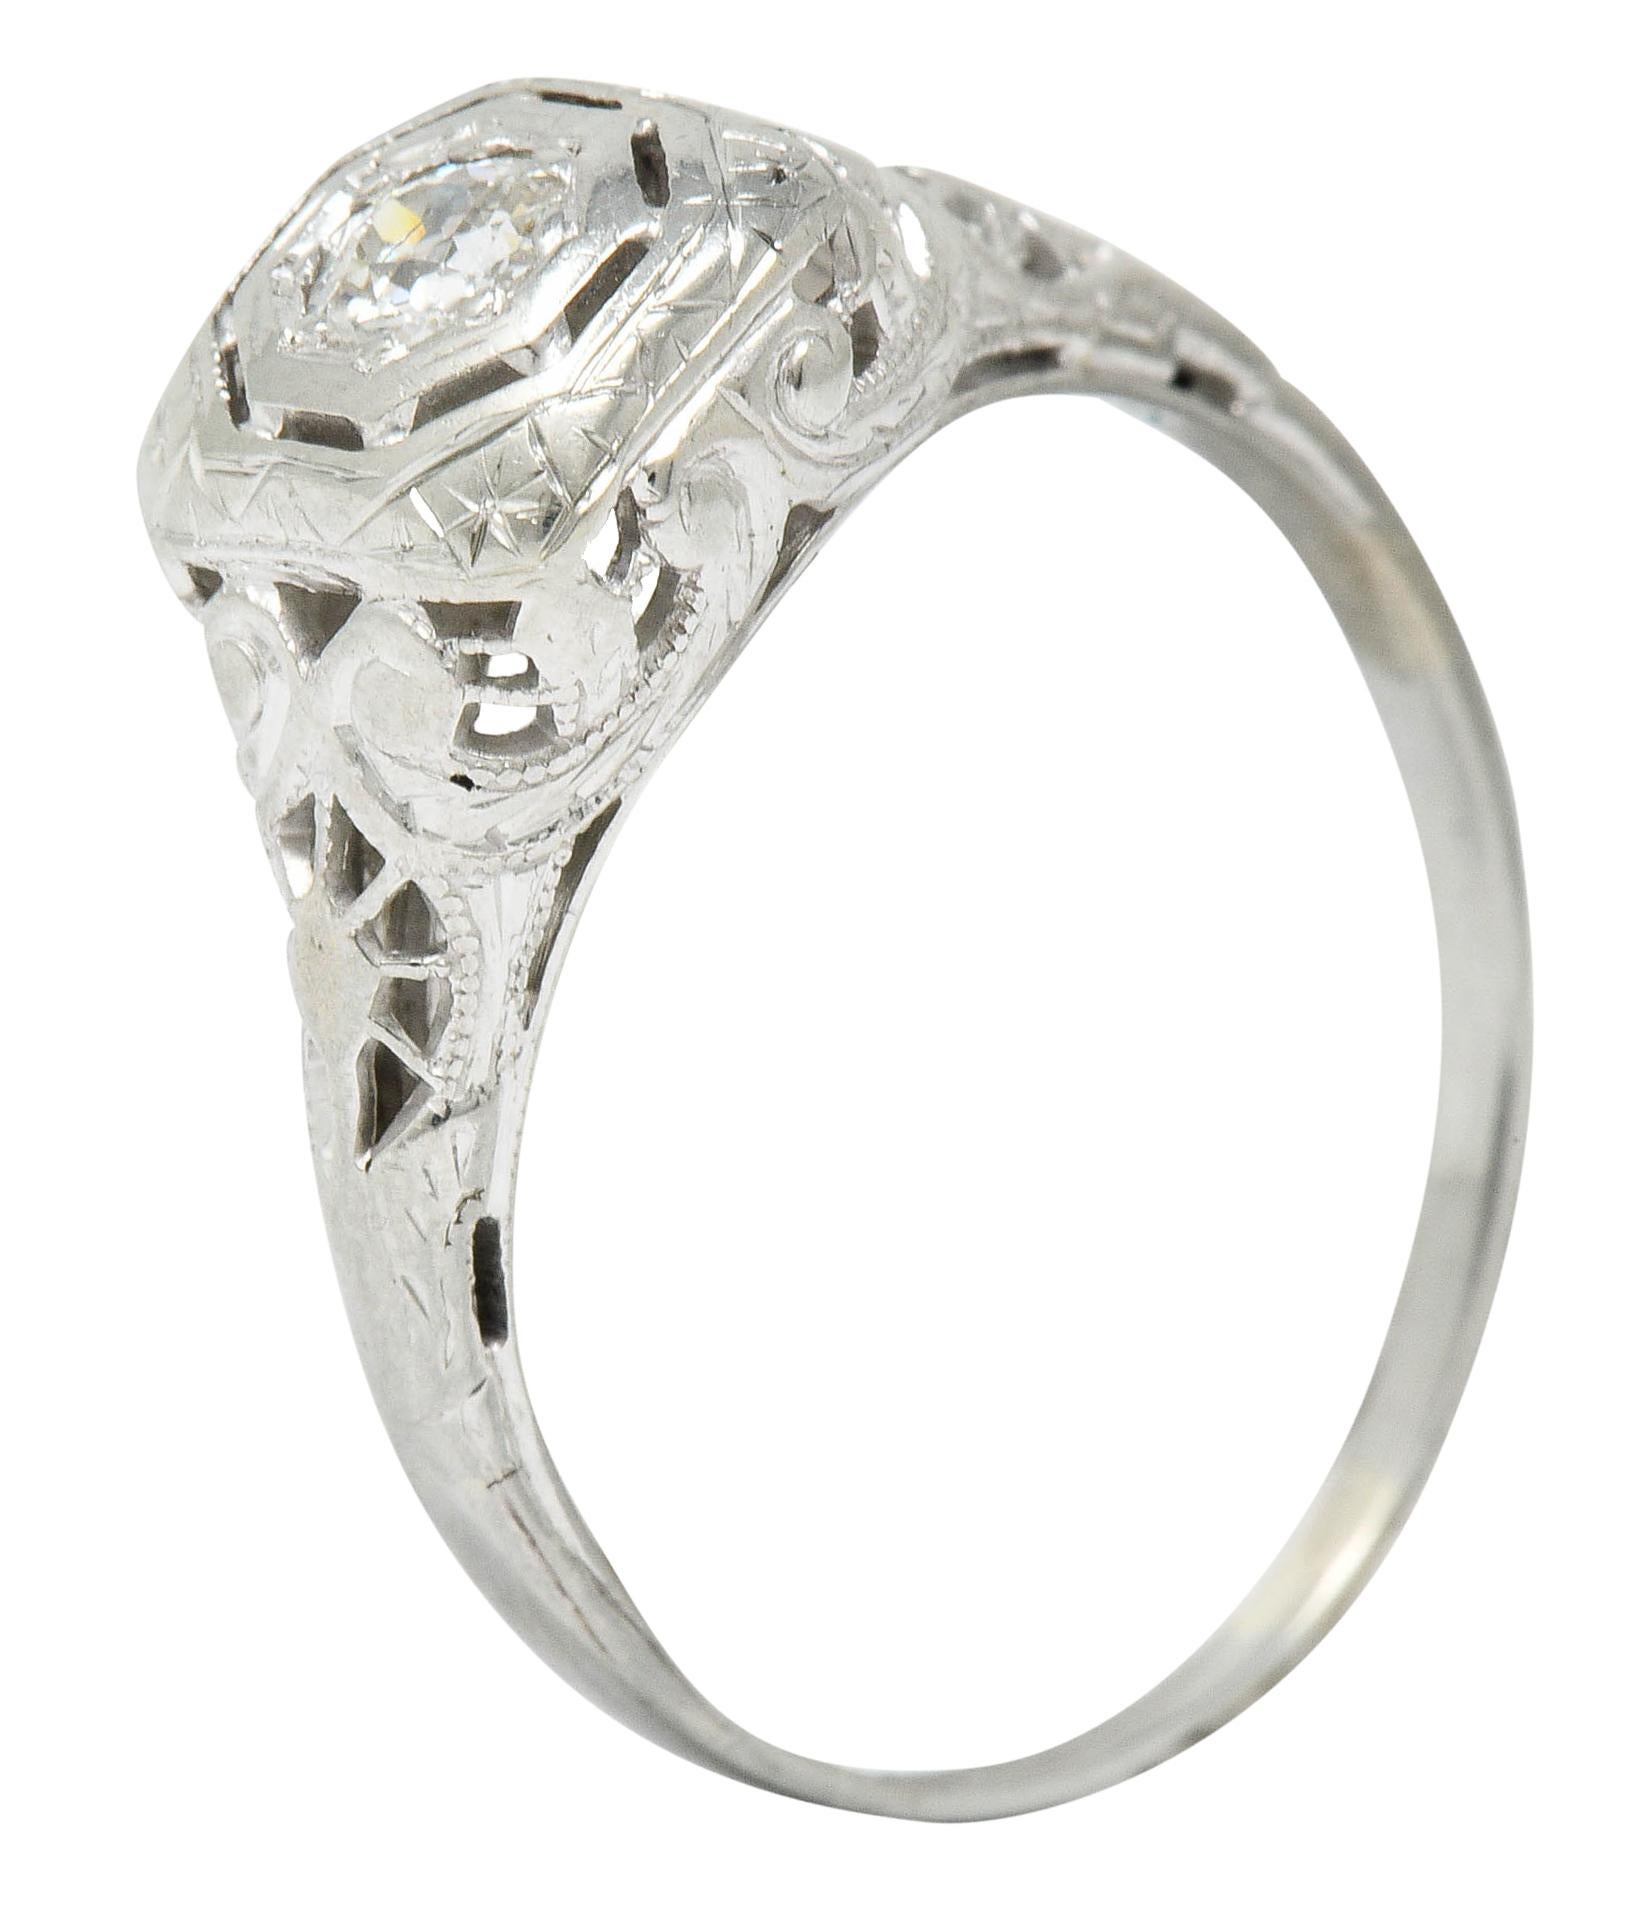 Edwardian Diamond 18 Karat White Gold Engagement Ring 1